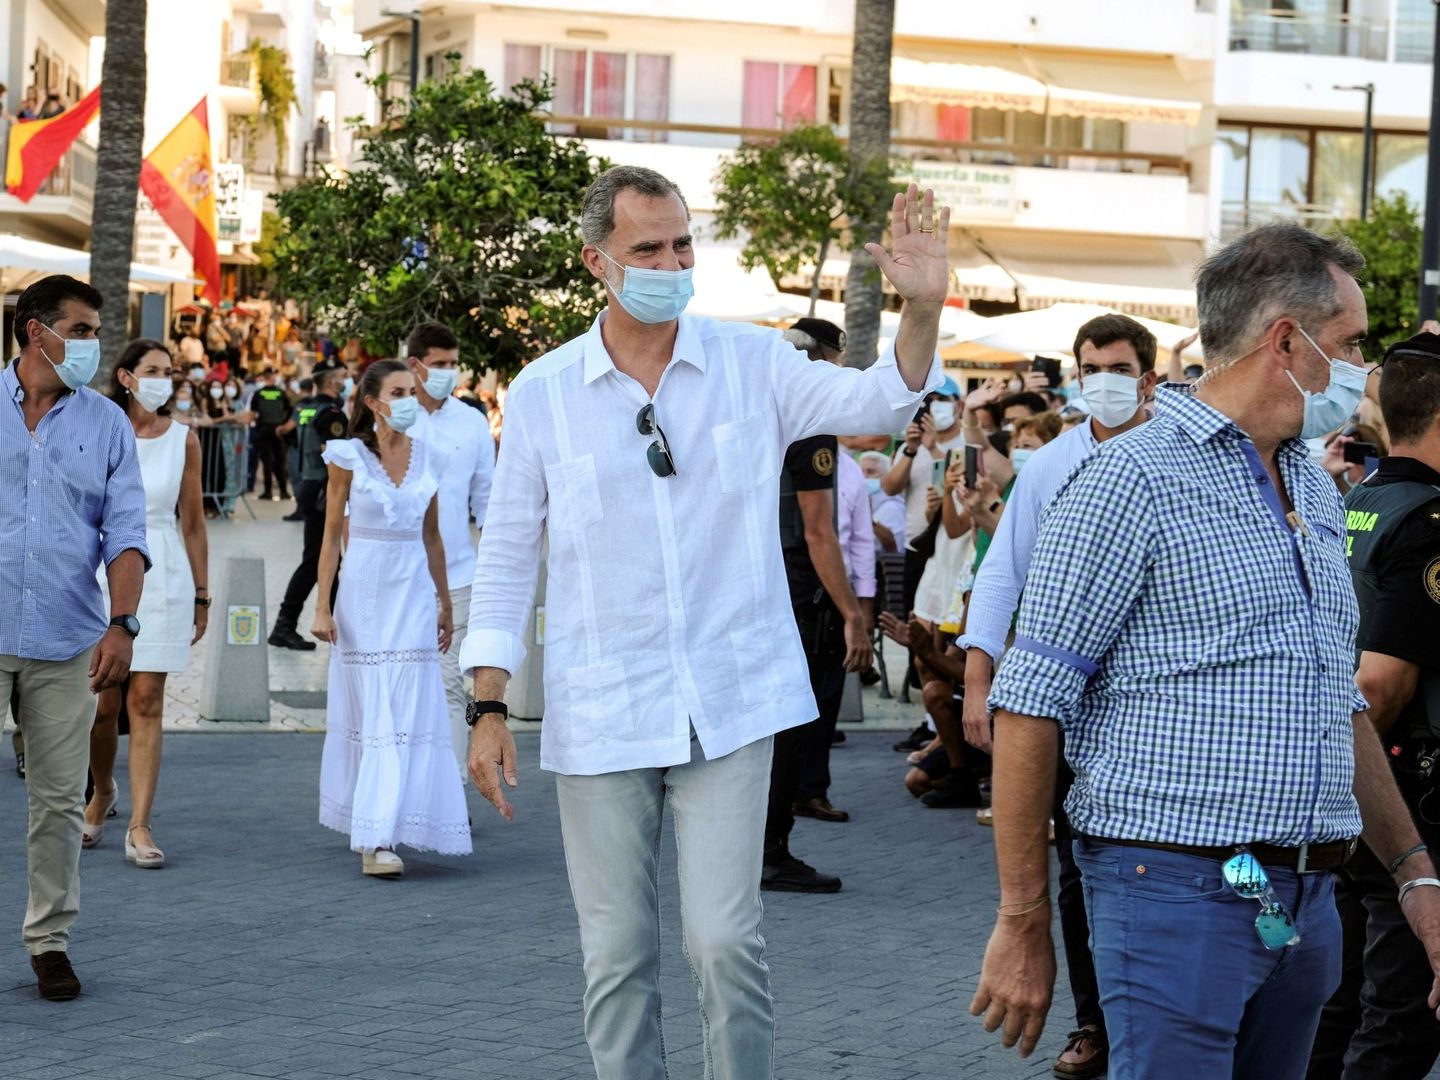 El rey Felipe VI saluda a los lugareños durante la visita real al municipio de Sant Antoni de Portmany, Ibiza, este verano. (EFE)